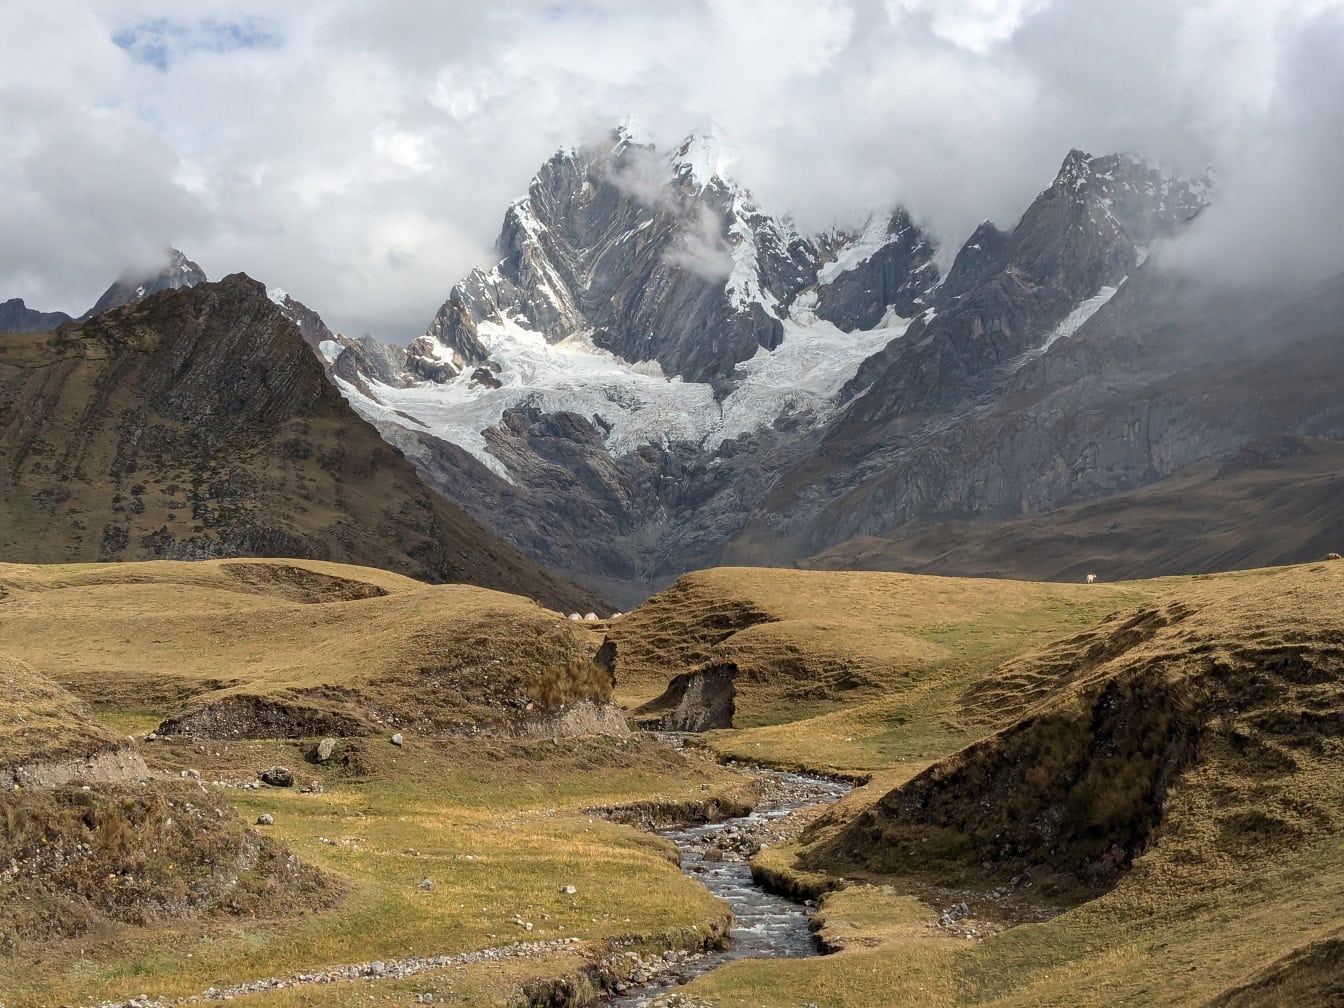 Horská rieka pretekajúca údolím v pohorí Cordillera Huayhuash v peruánskych Andách s horami v pozadí